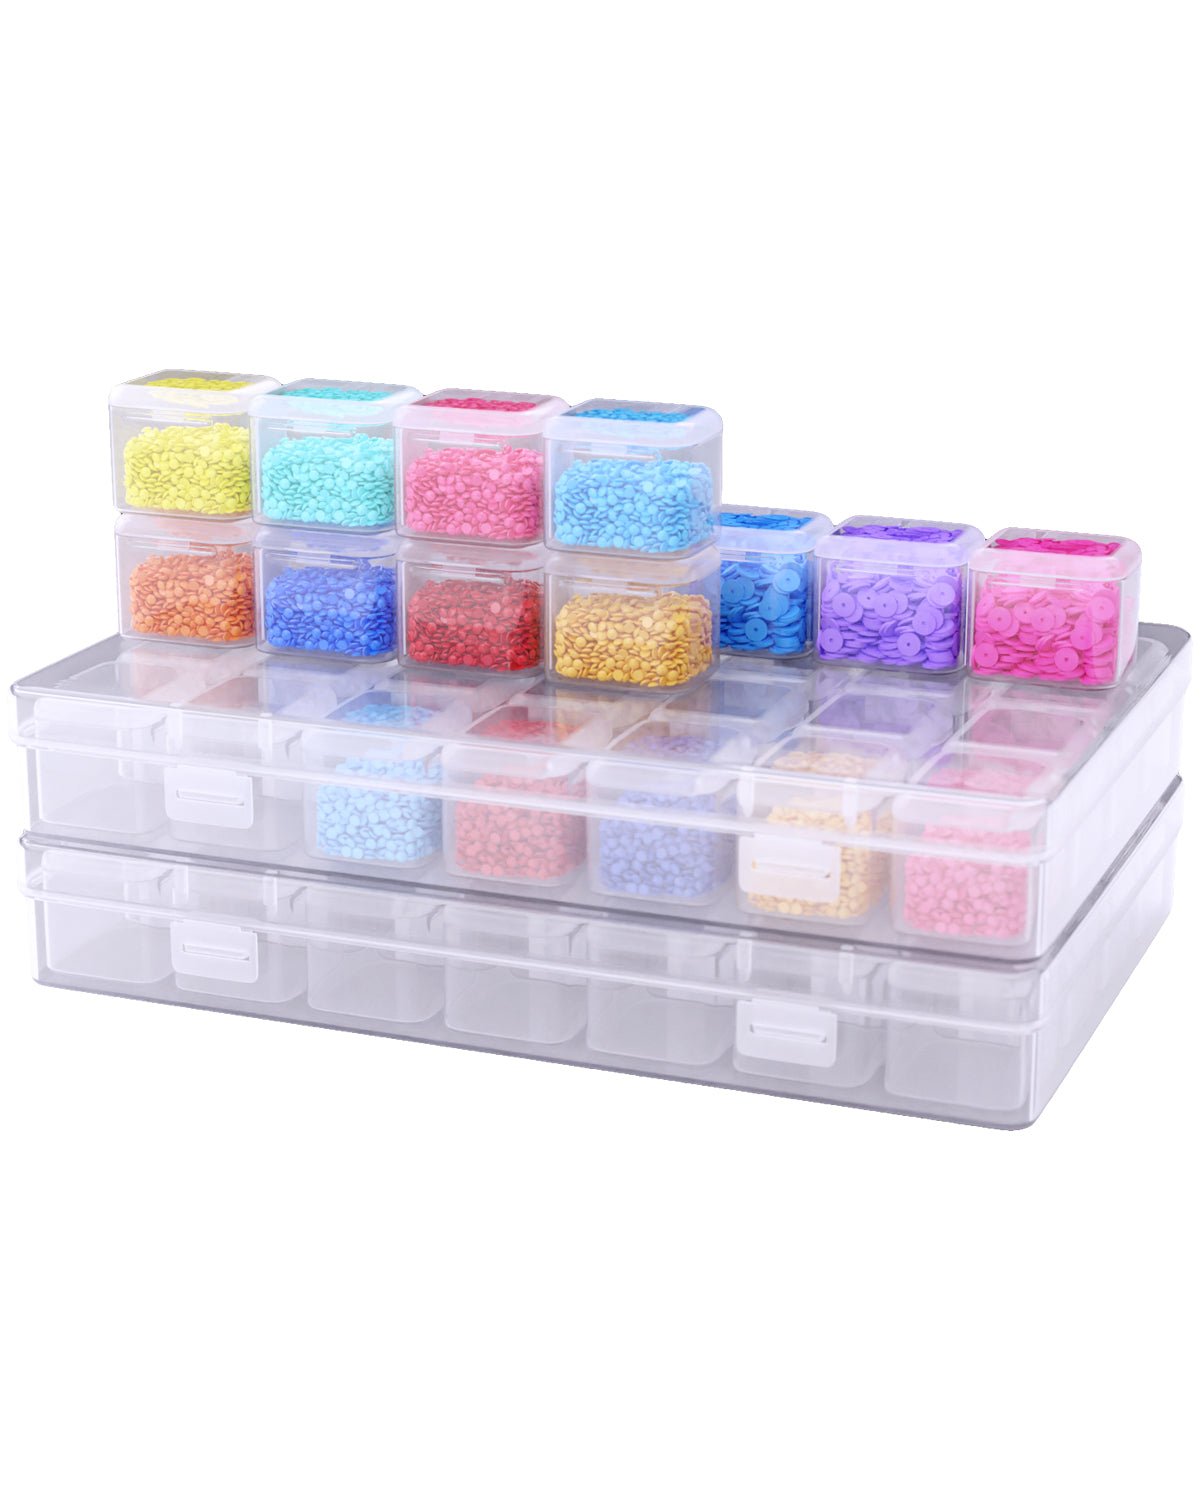 28 Grids Diamond Painting Storage Box ( 2 Packs )